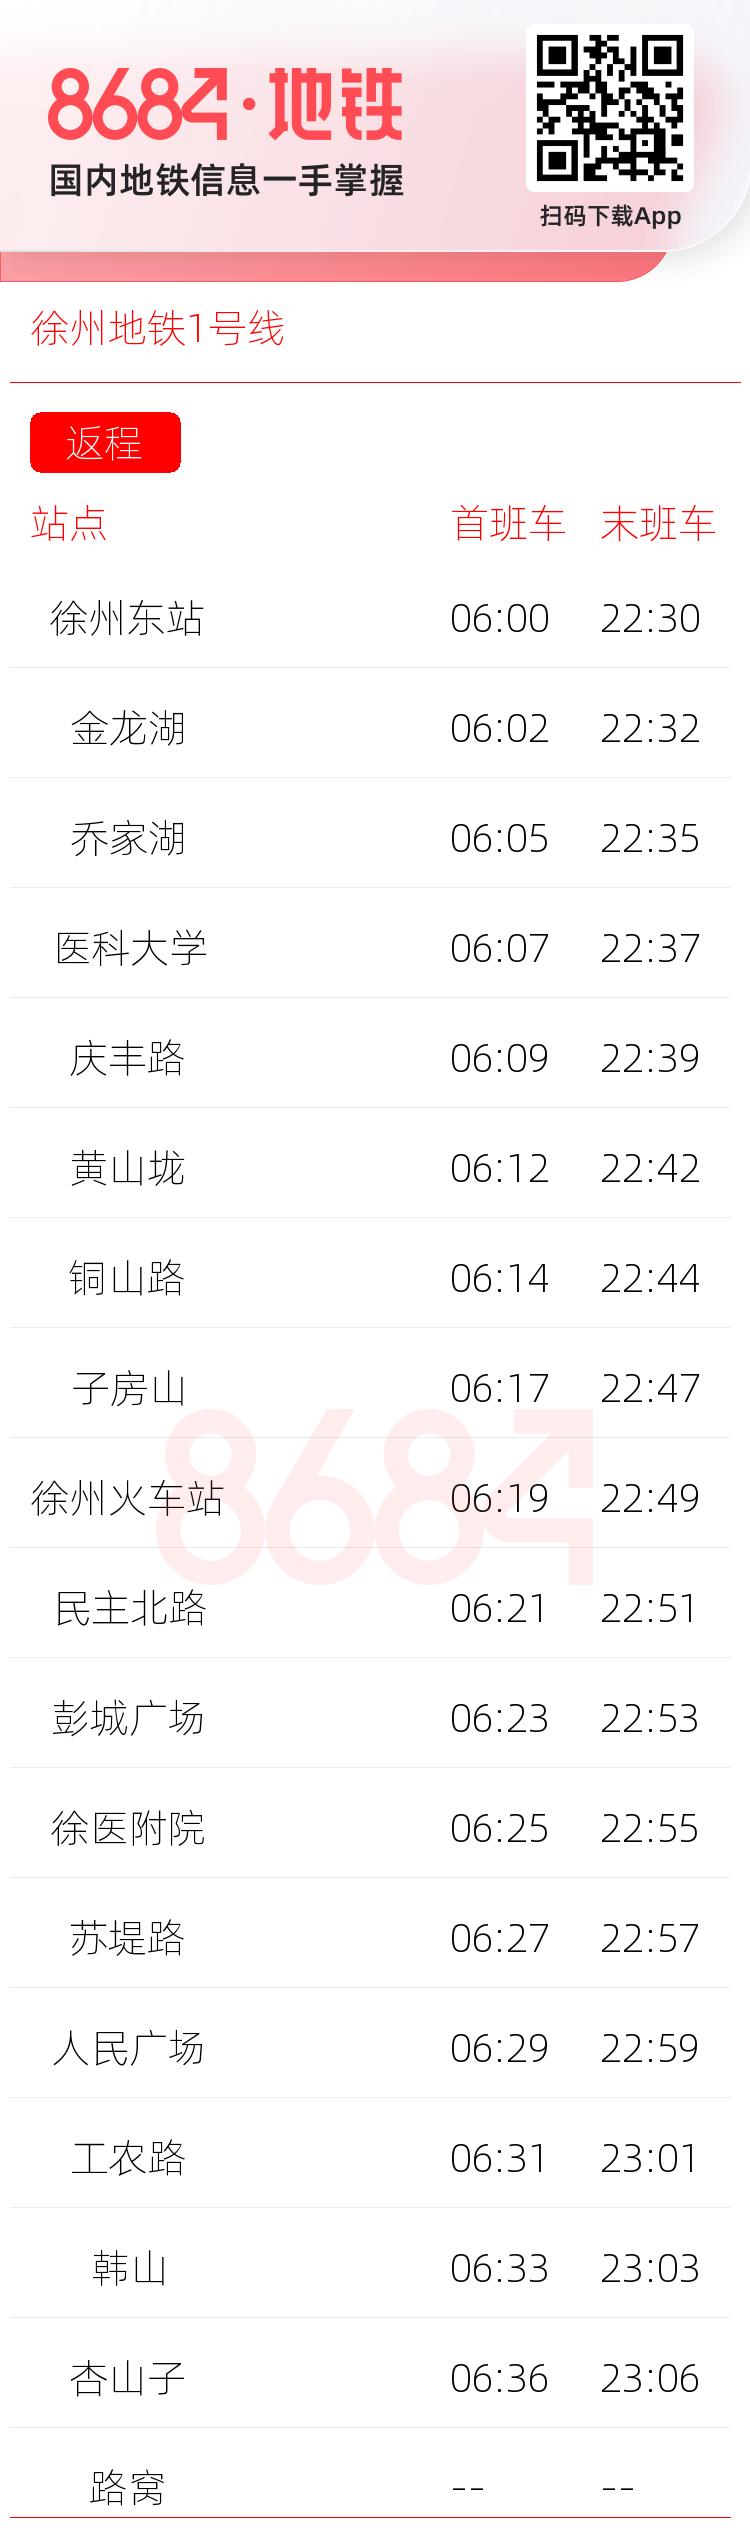 徐州地铁1号线运营时间表